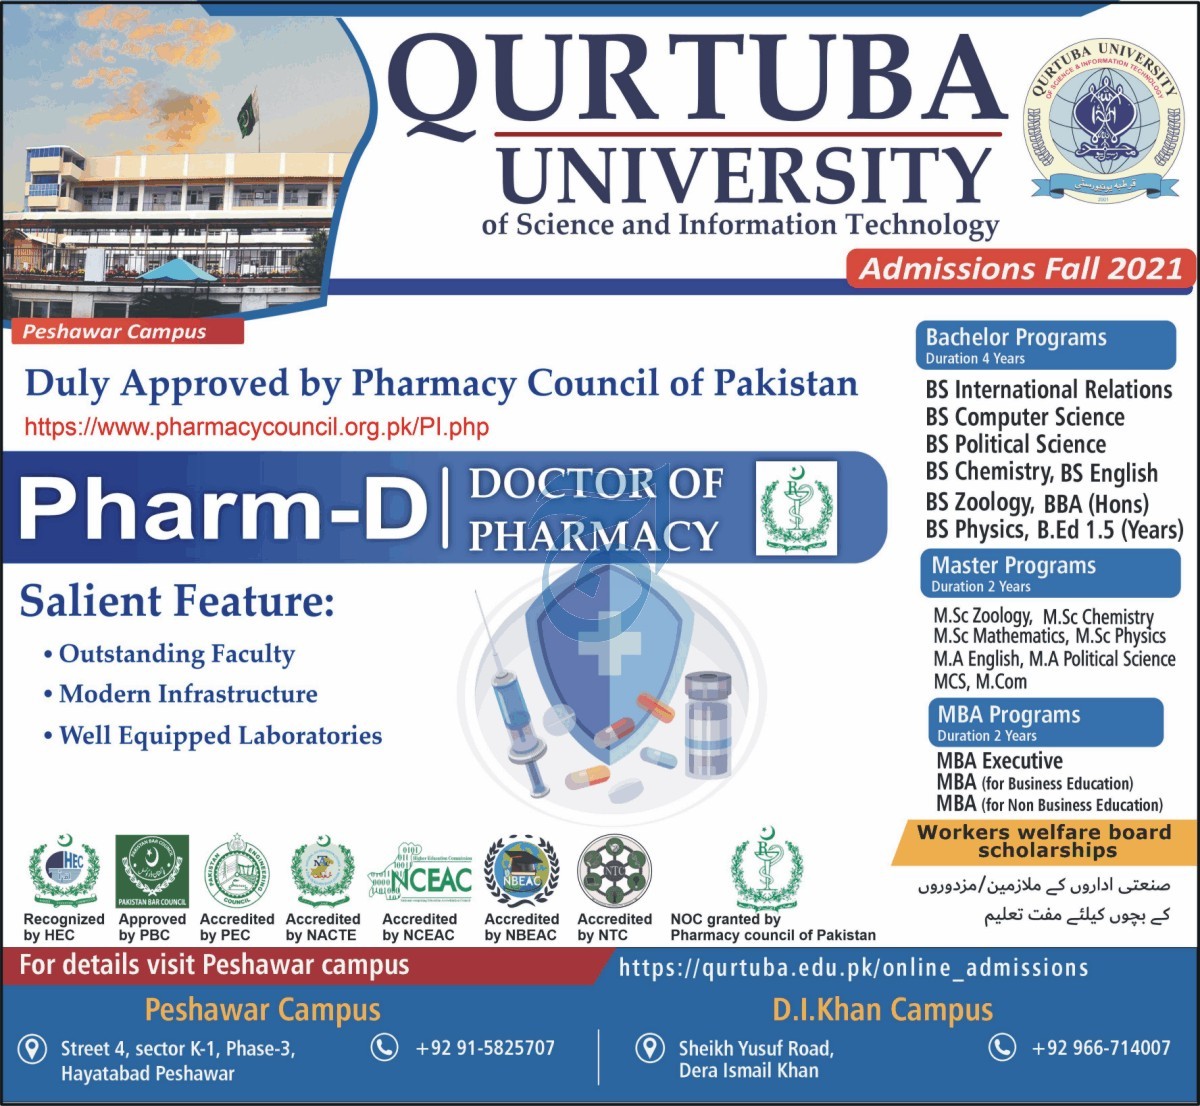 Qurtuba Uni Peshawar Pharm-D Admissions Fall 2021.